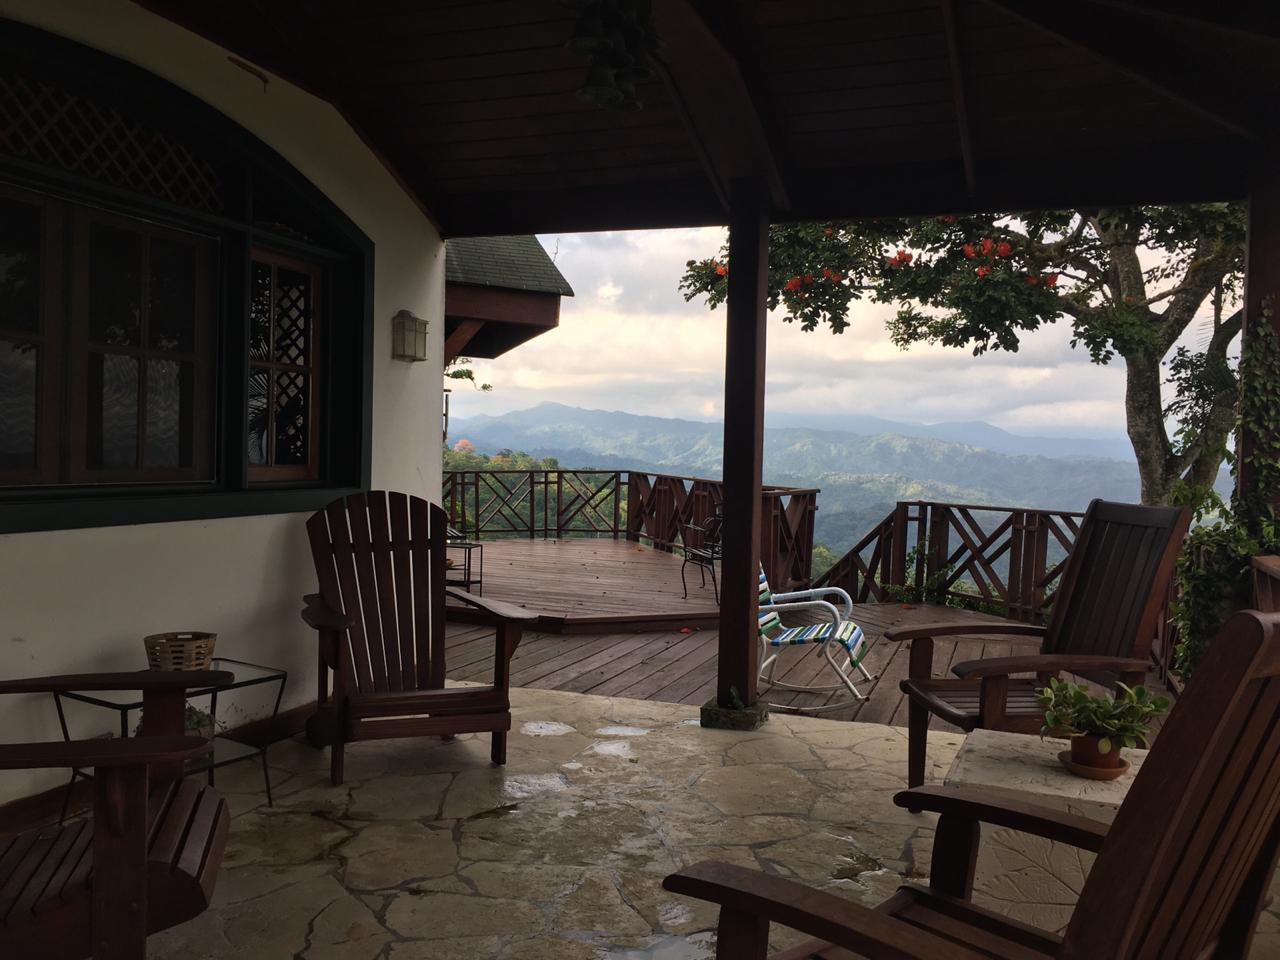 casas vacacionales y villas - Vendo casa de veraneo en la montaña de La colonia cambista  4